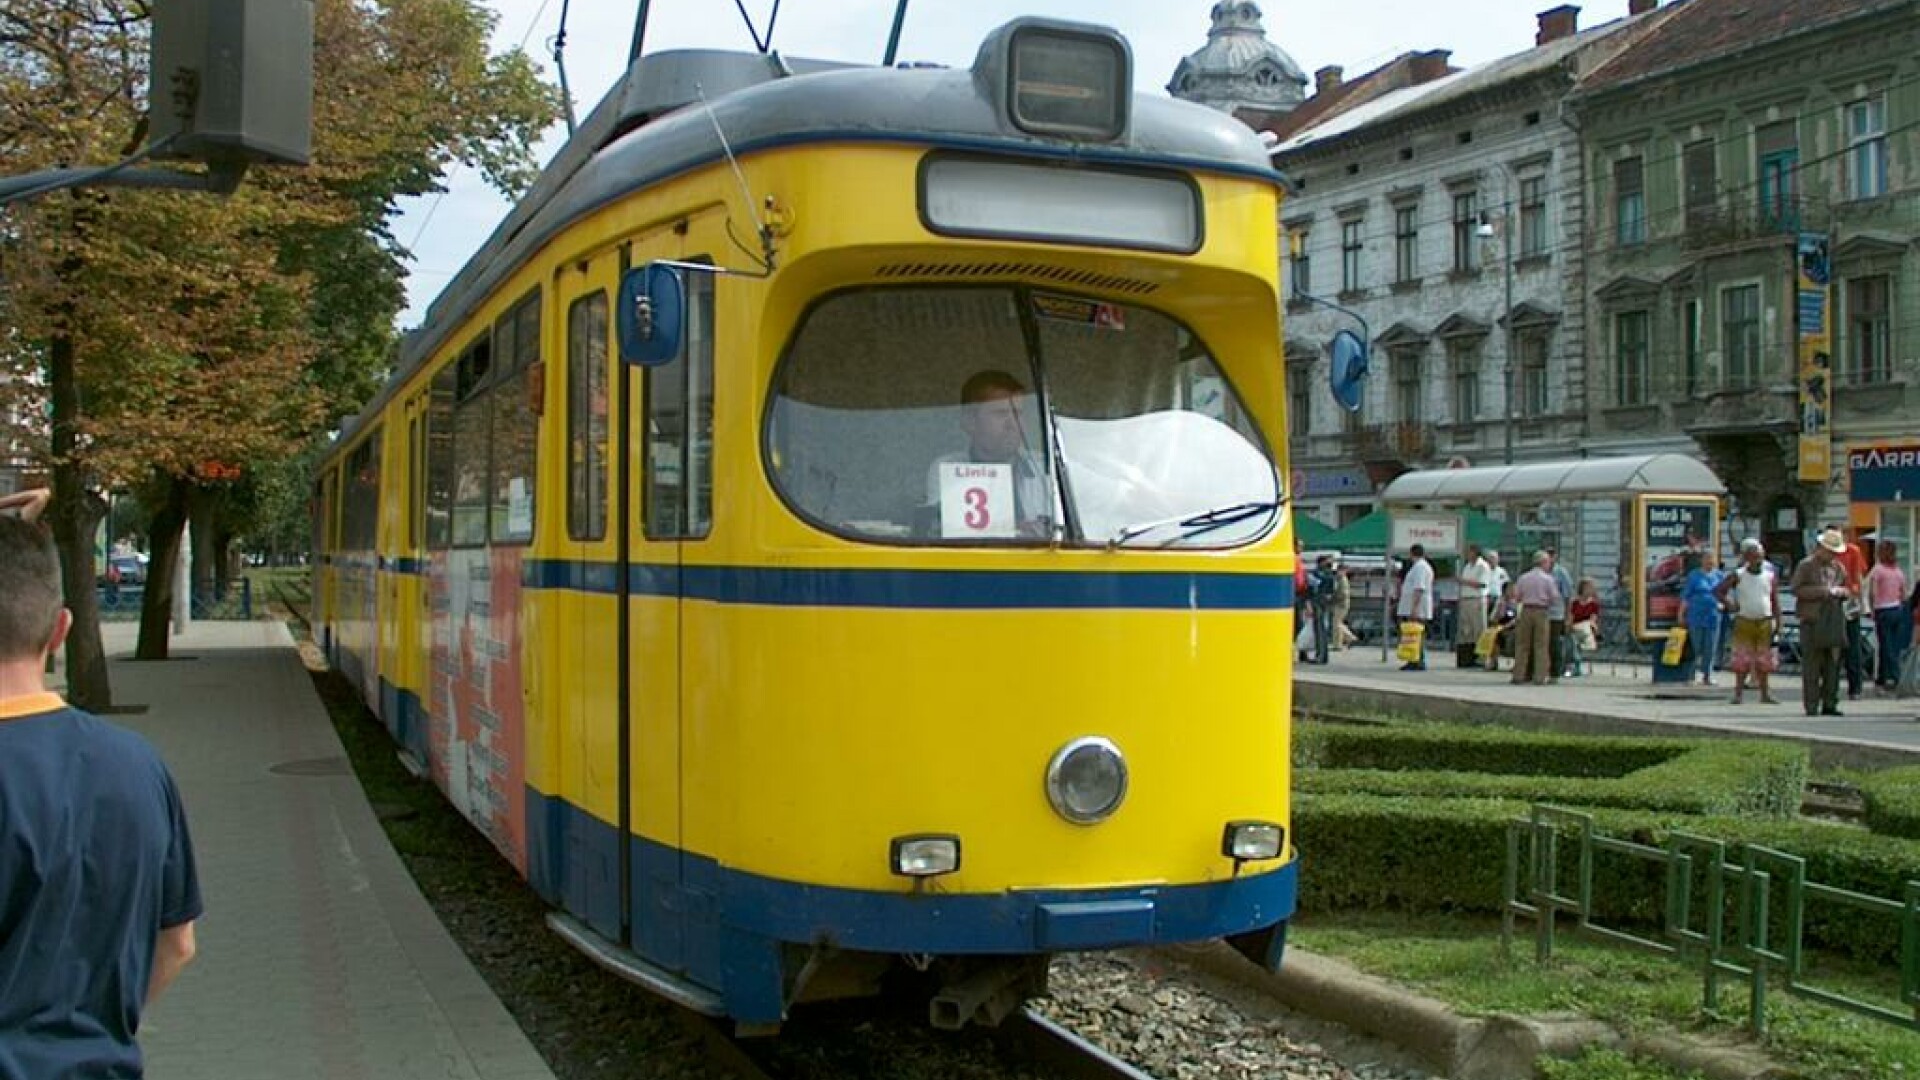 tramvai in Arad